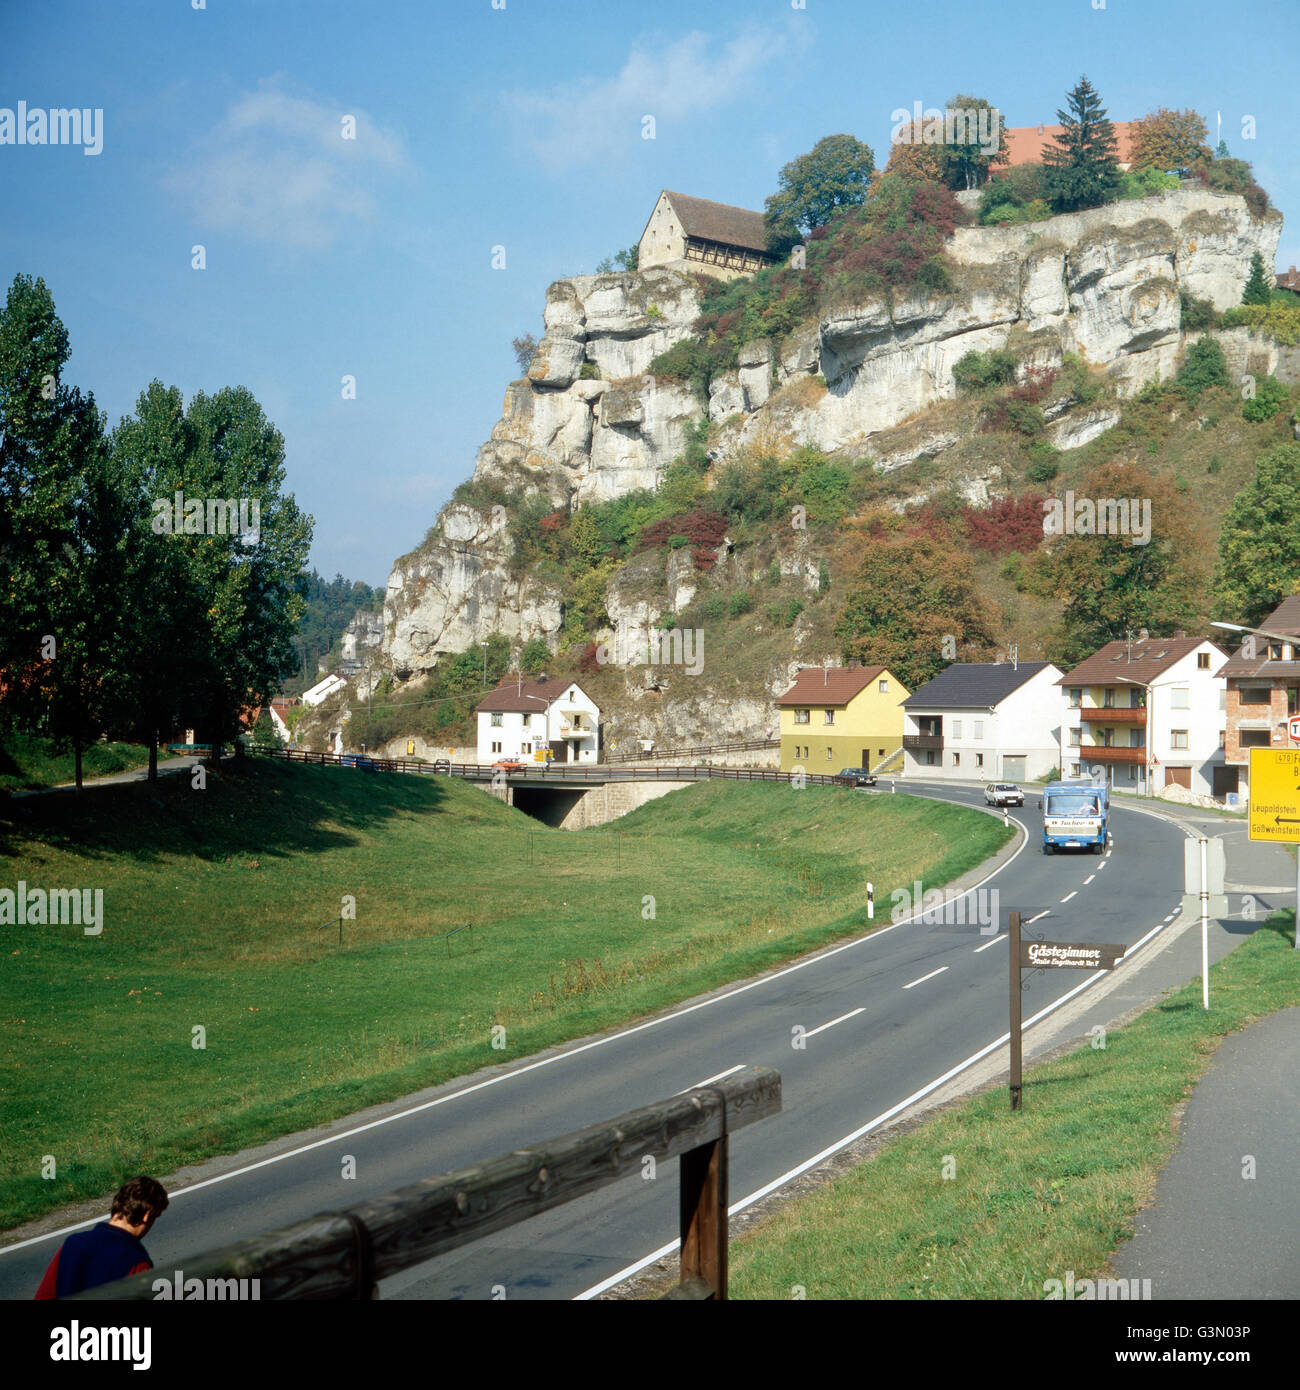 Reise durch Franken, Deutschland 1980er Jahre. Journey through Franconia, Germany 1980s. Stock Photo